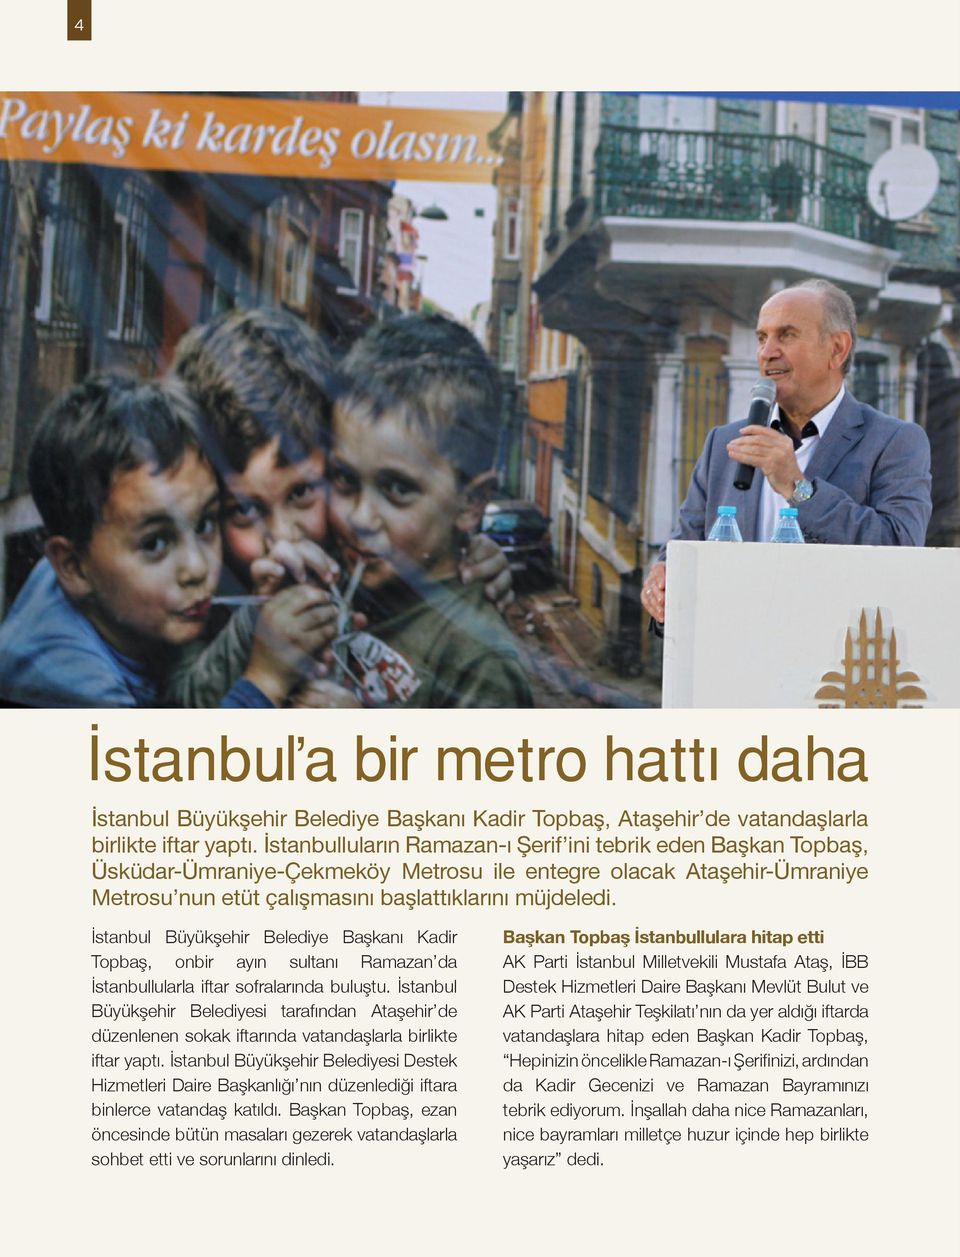 İstanbul Büyükşehir Belediye Başkanı Kadir Topbaş, onbir ayın sultanı Ramazan da İstanbullularla iftar sofralarında buluştu.